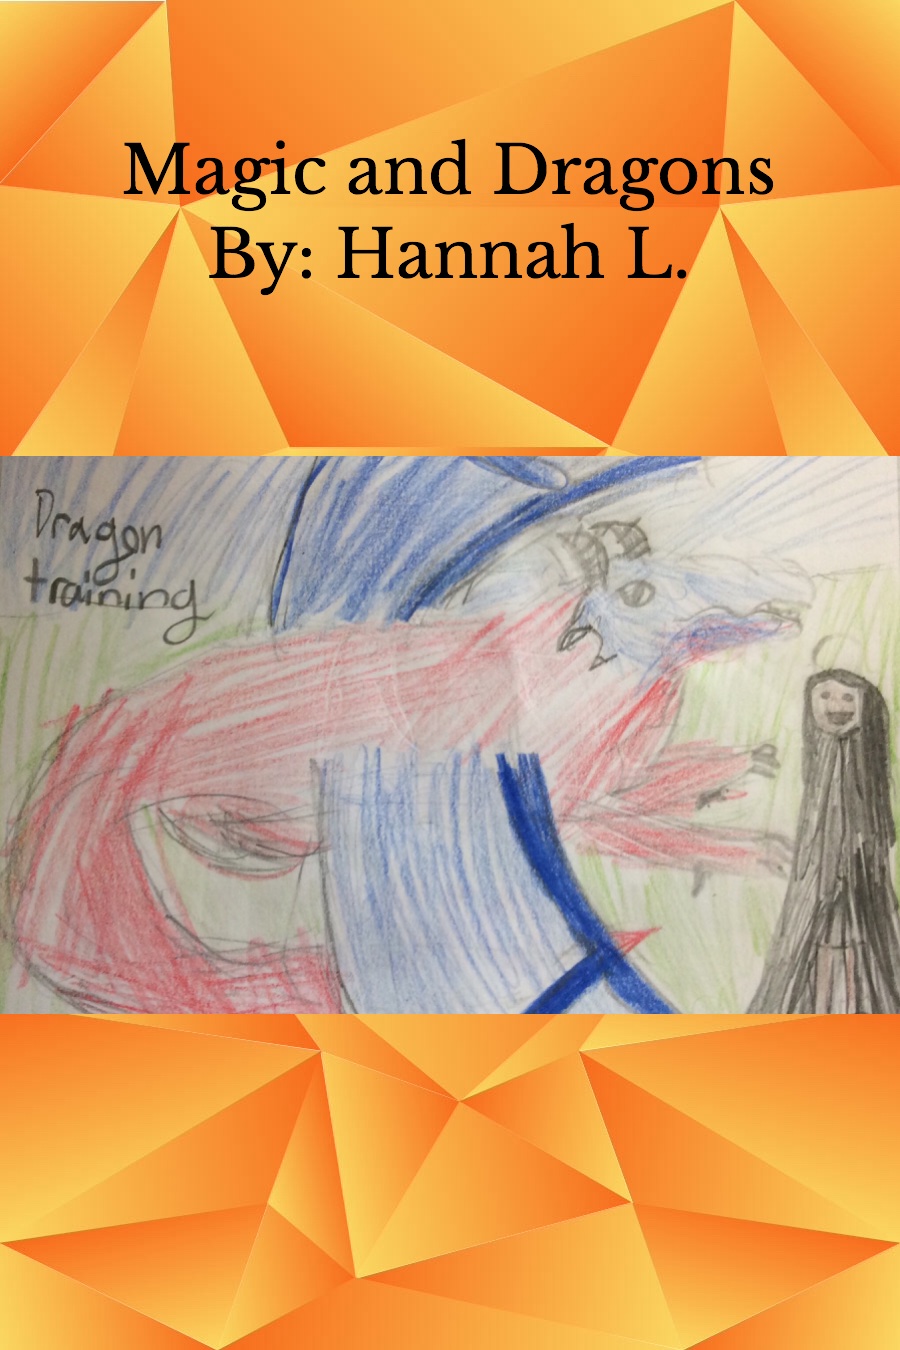 Magic and dragons by hannah l